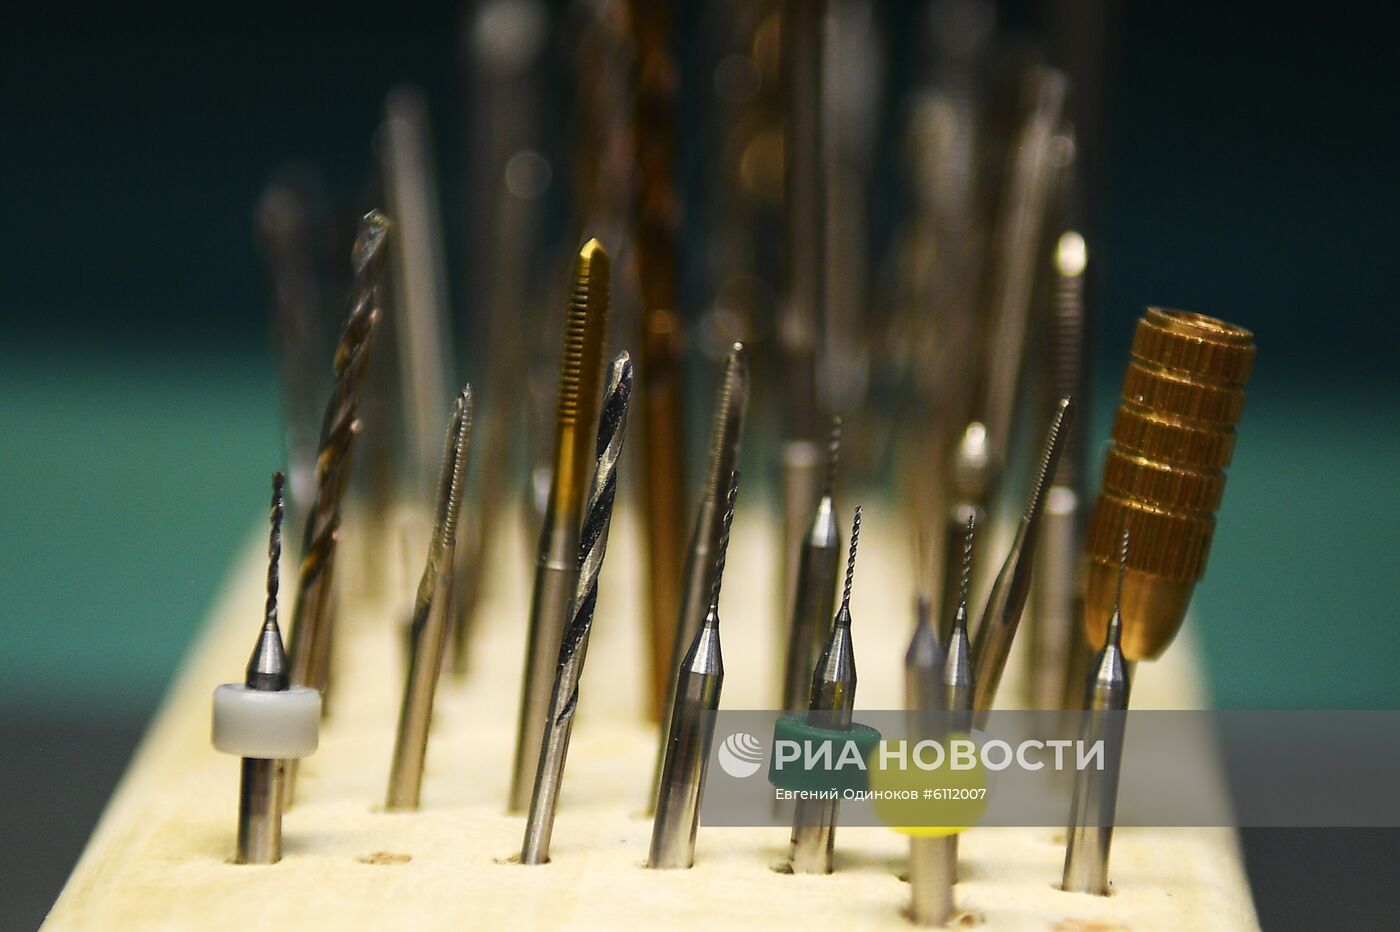 Первый в России центр по 3D-печати комплектующих для проверки микросхем открыли в Ижевске